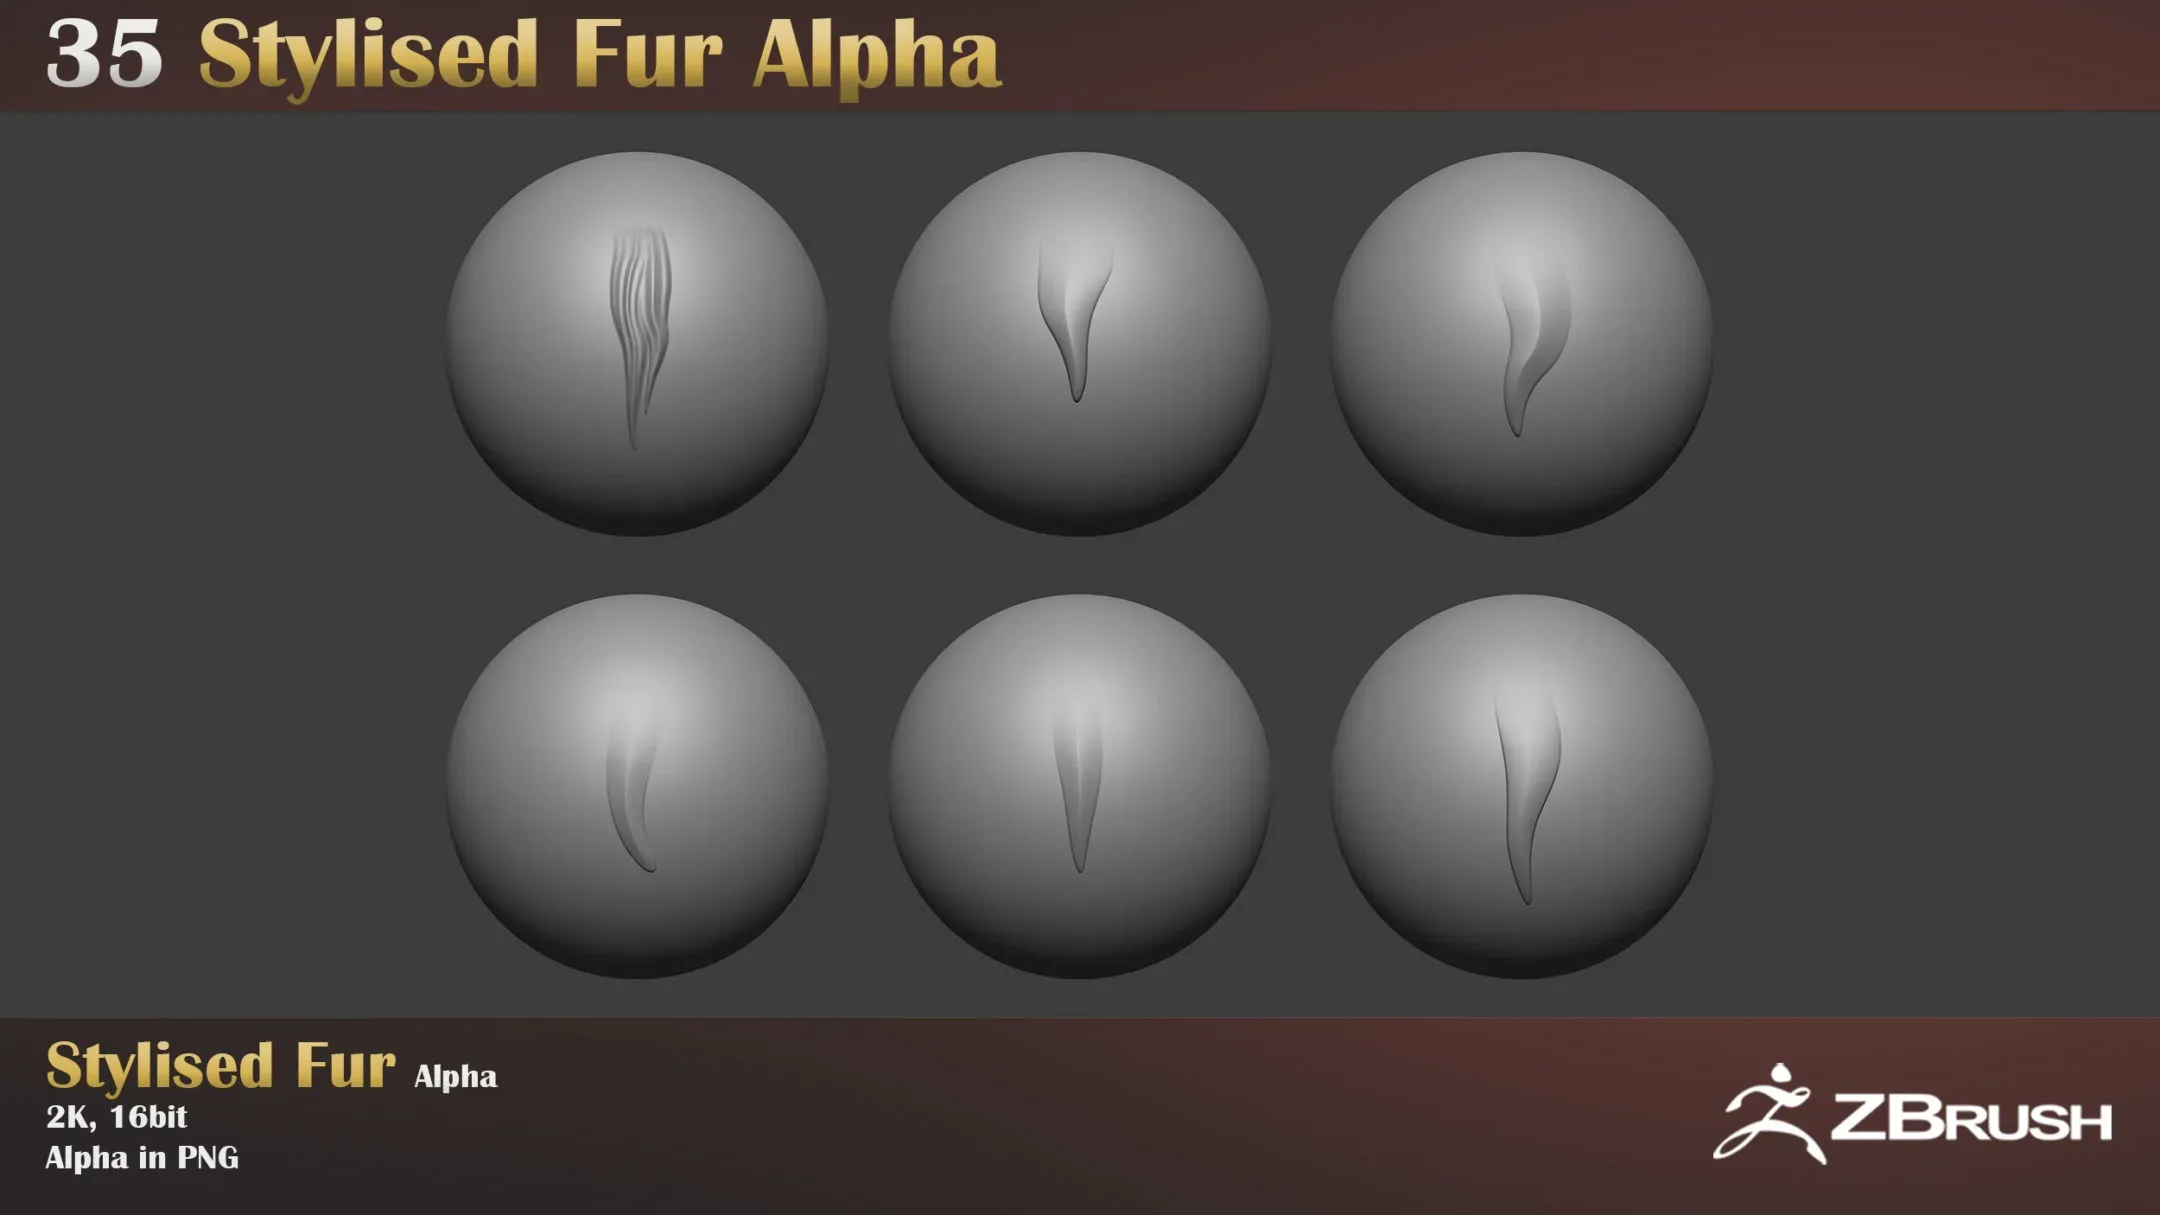 Stylized Fur Alpha